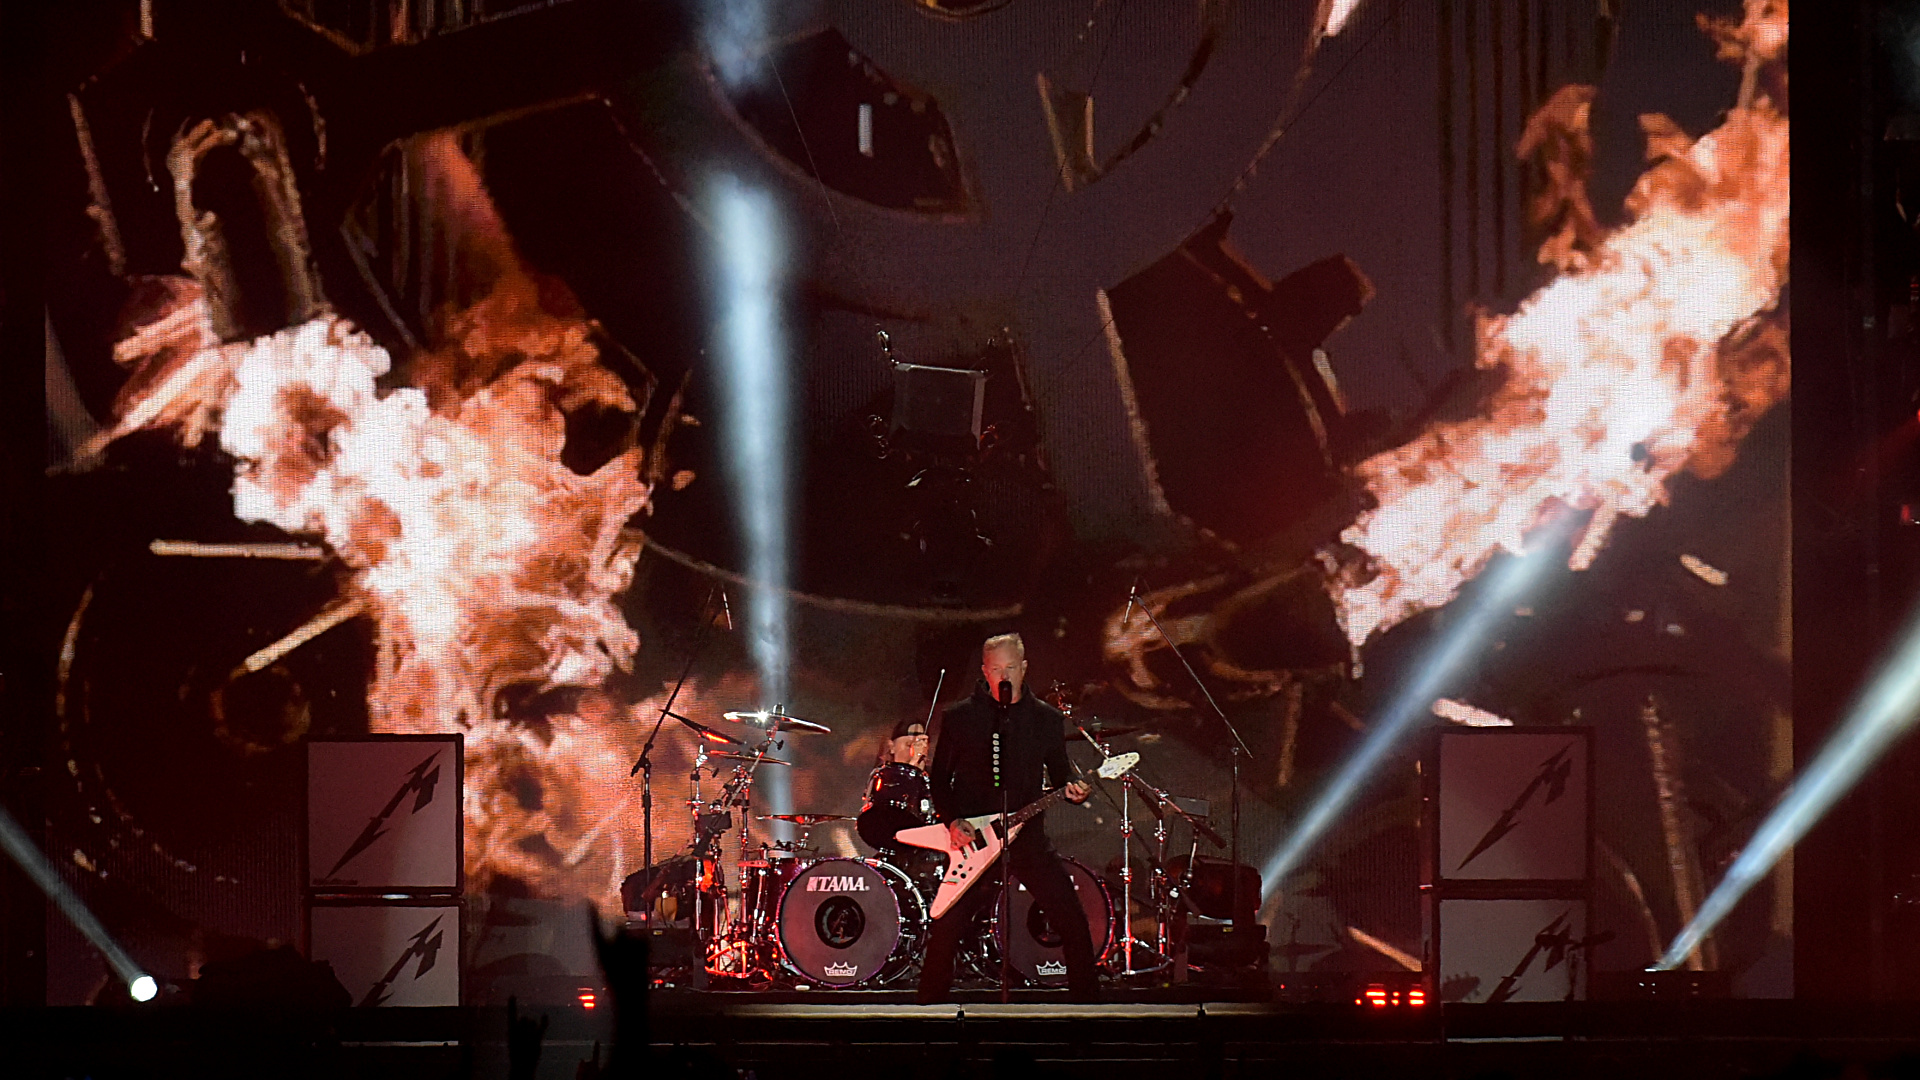 Unas enormes llamaradas sobre el escenario fueron parte de la puesta en escena de Metallica en Buenos Aires